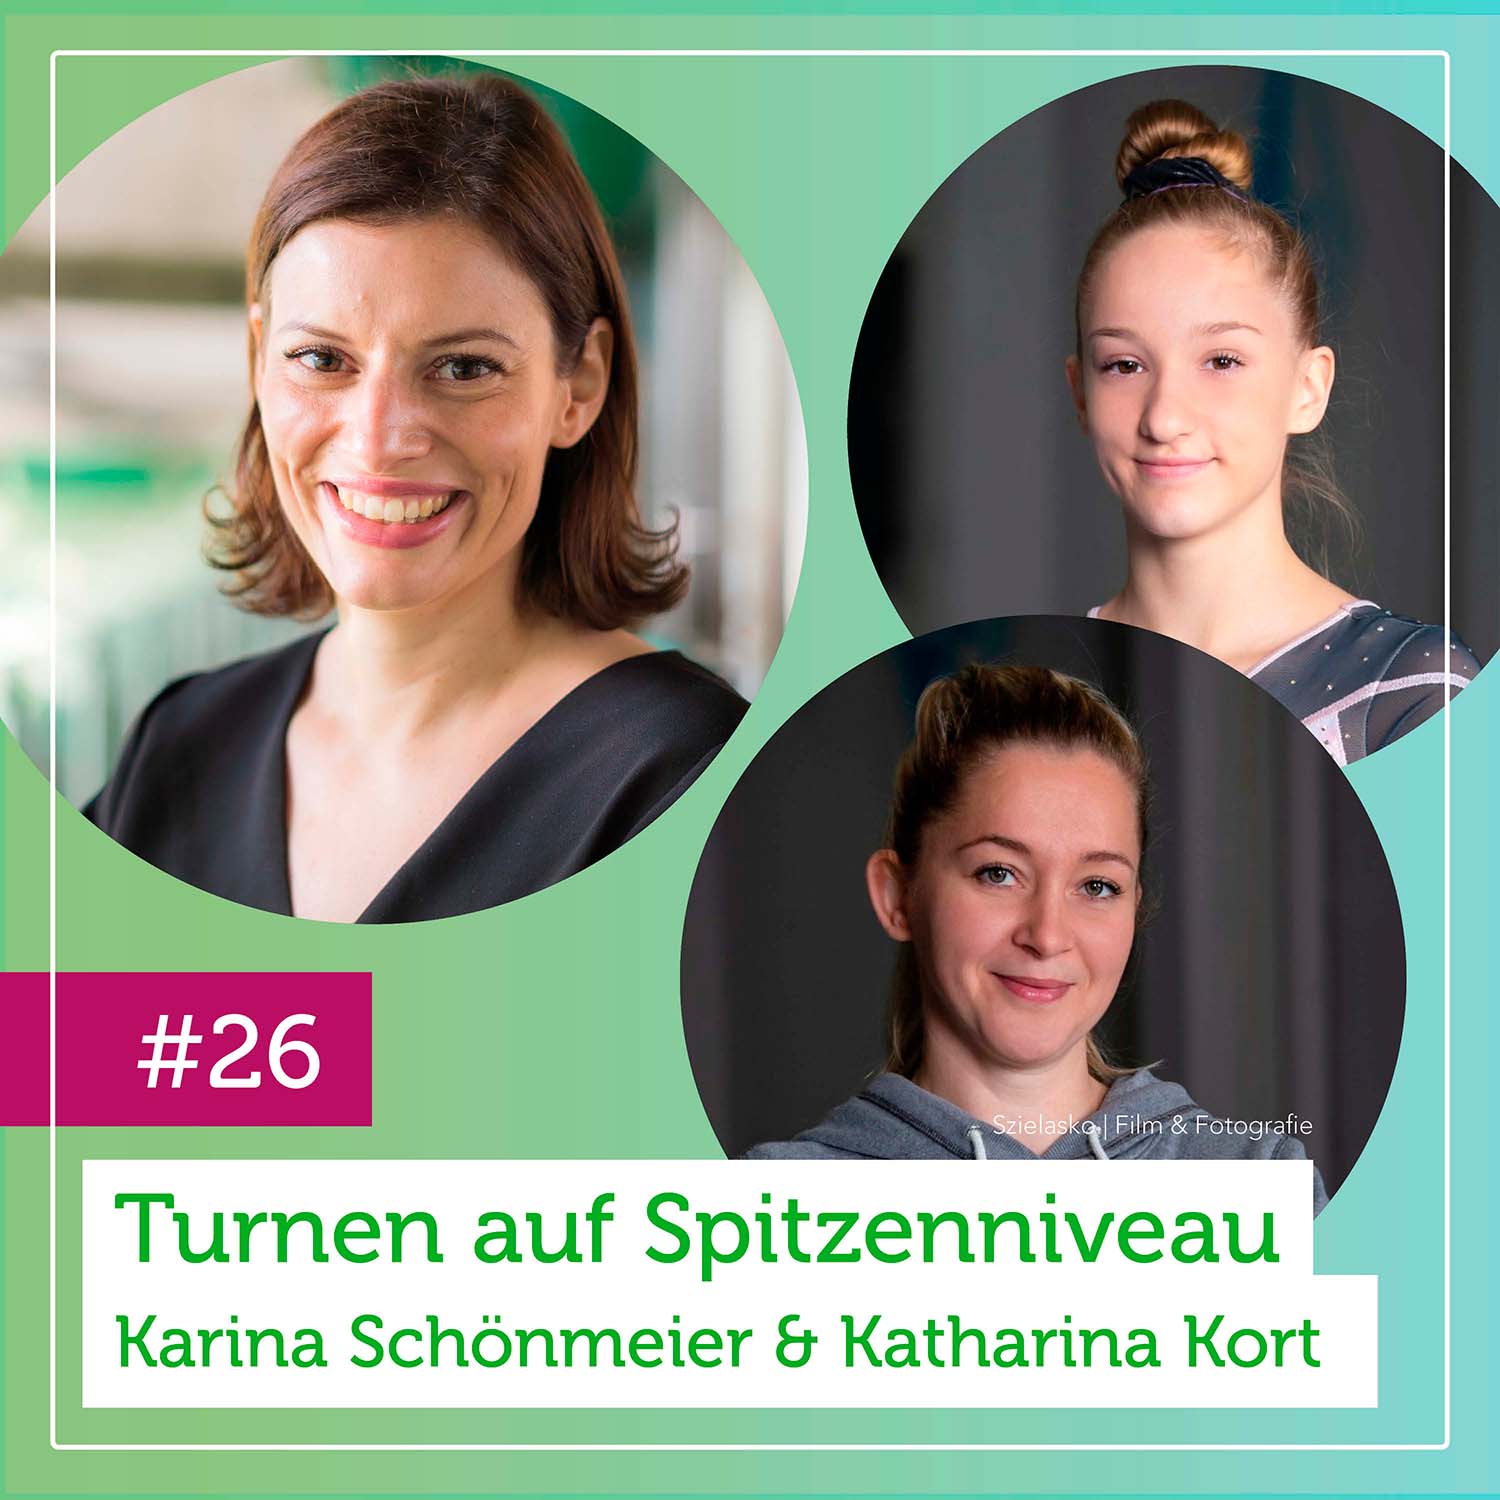 Deutsche Jugendmeisterin im Turnen Karina Schönmaier